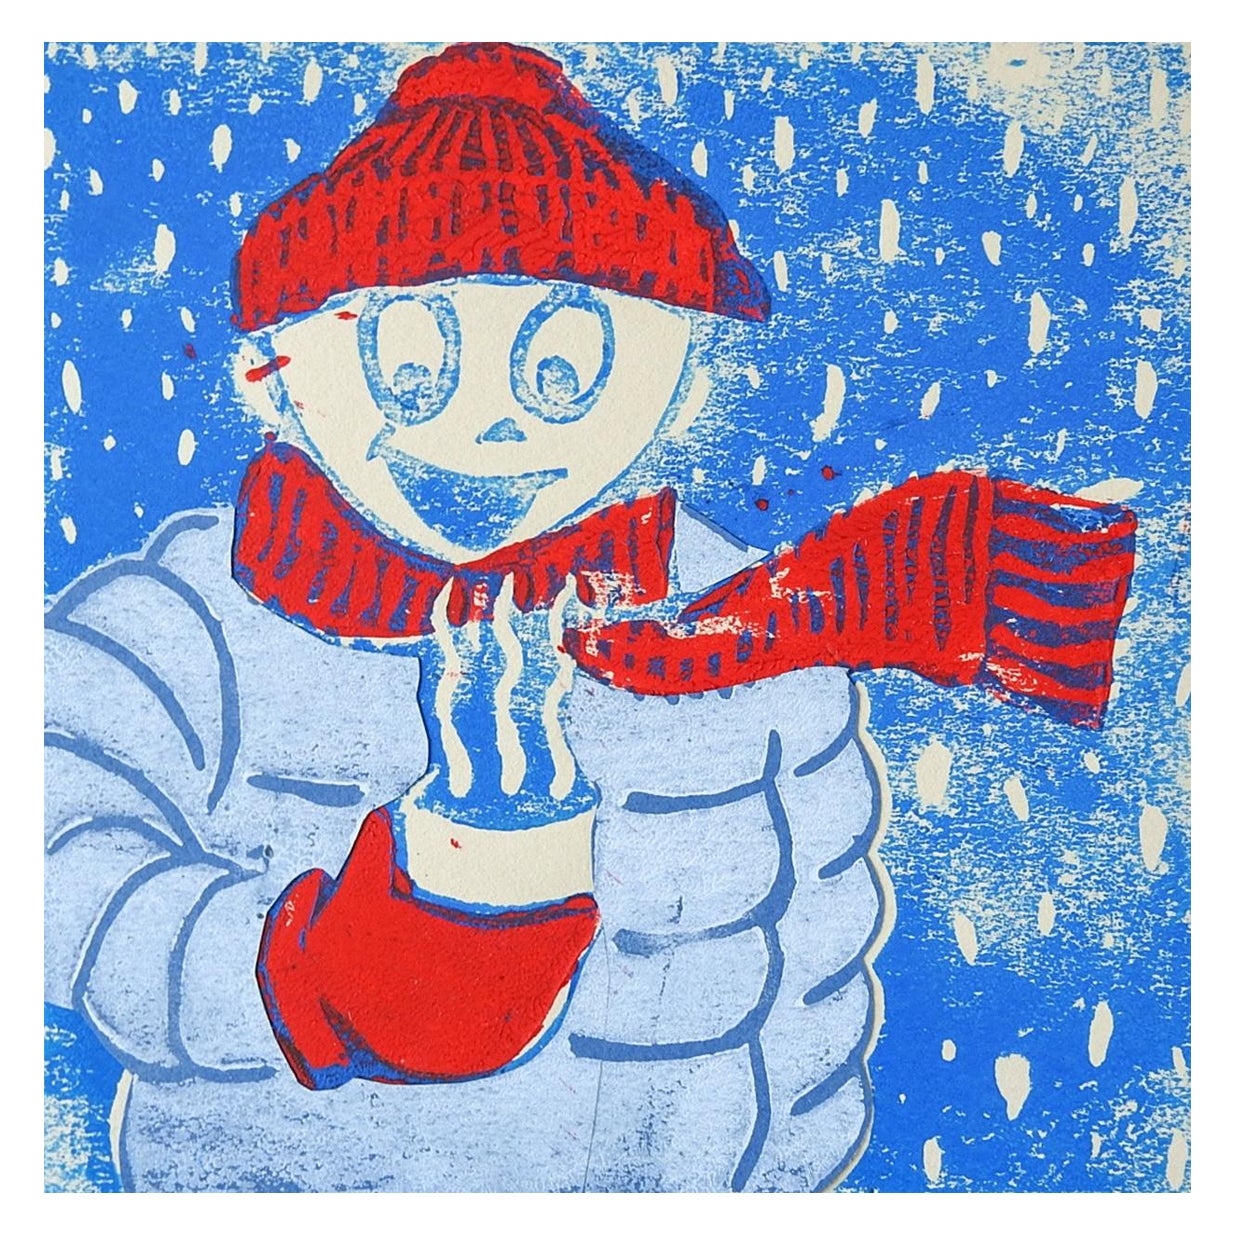 Winterfigur und heiße Schokoladen- Serigraphie in Rot und Blau